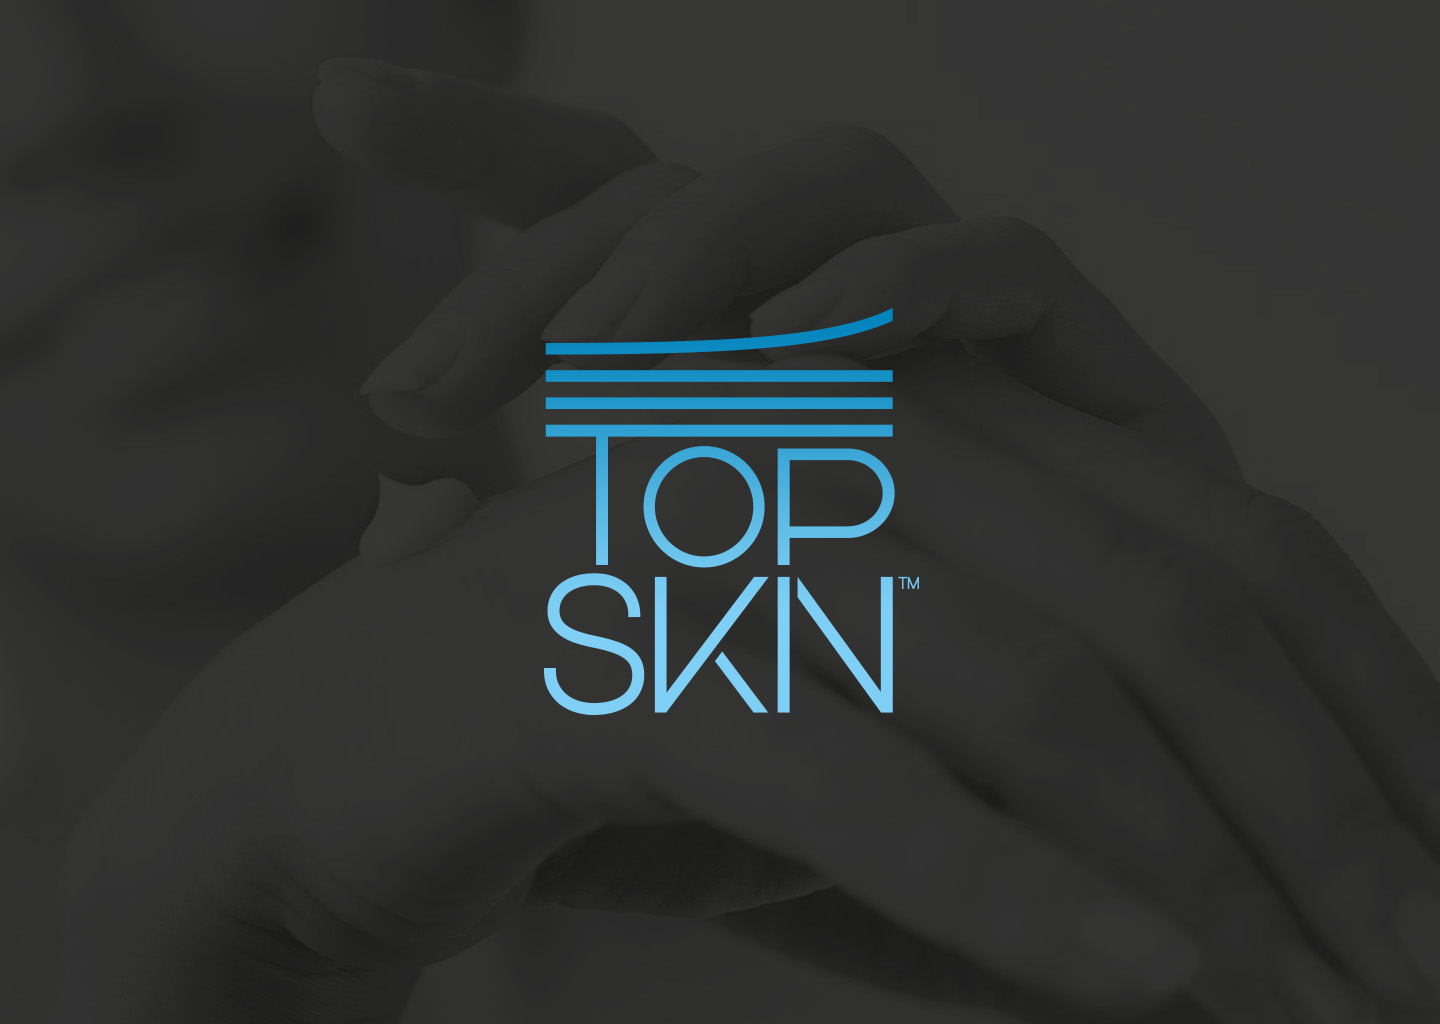 Top-skin logo